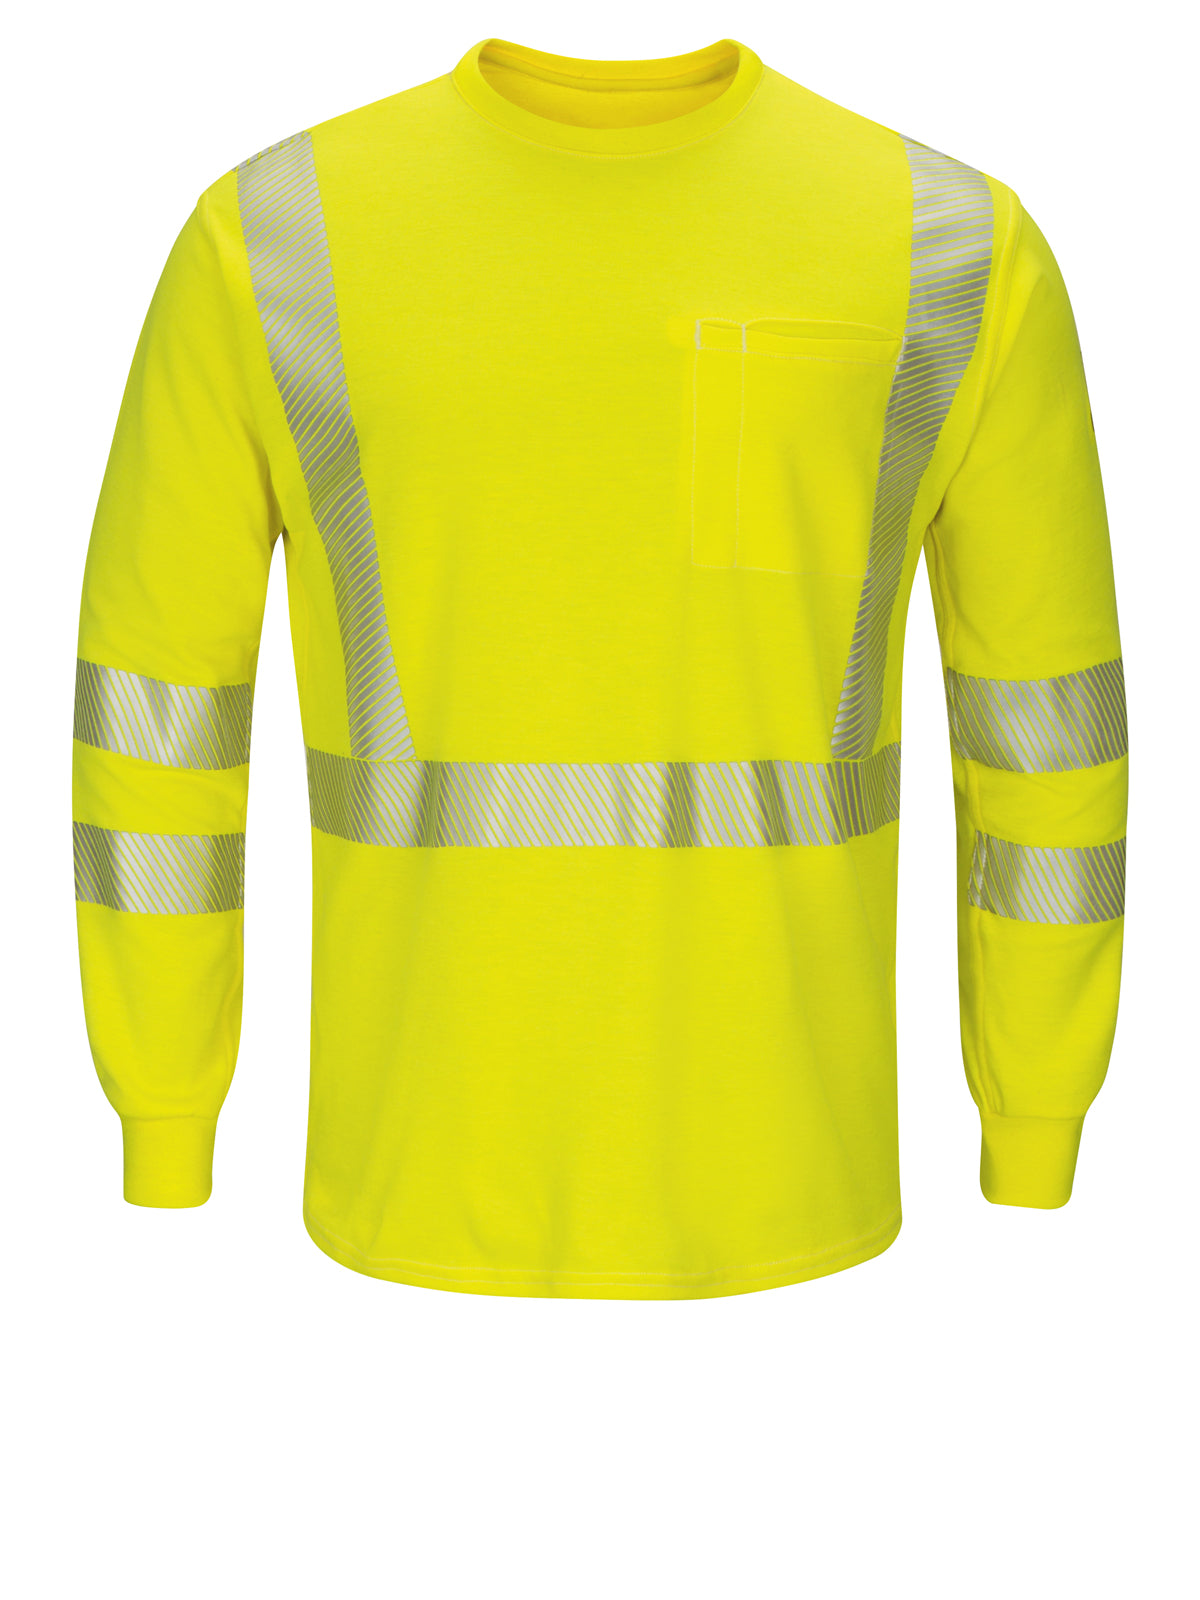 Men's Lightweight FR Hi-Visibility Long Sleeve T-Shirt - SMK8 - Yellow/Green